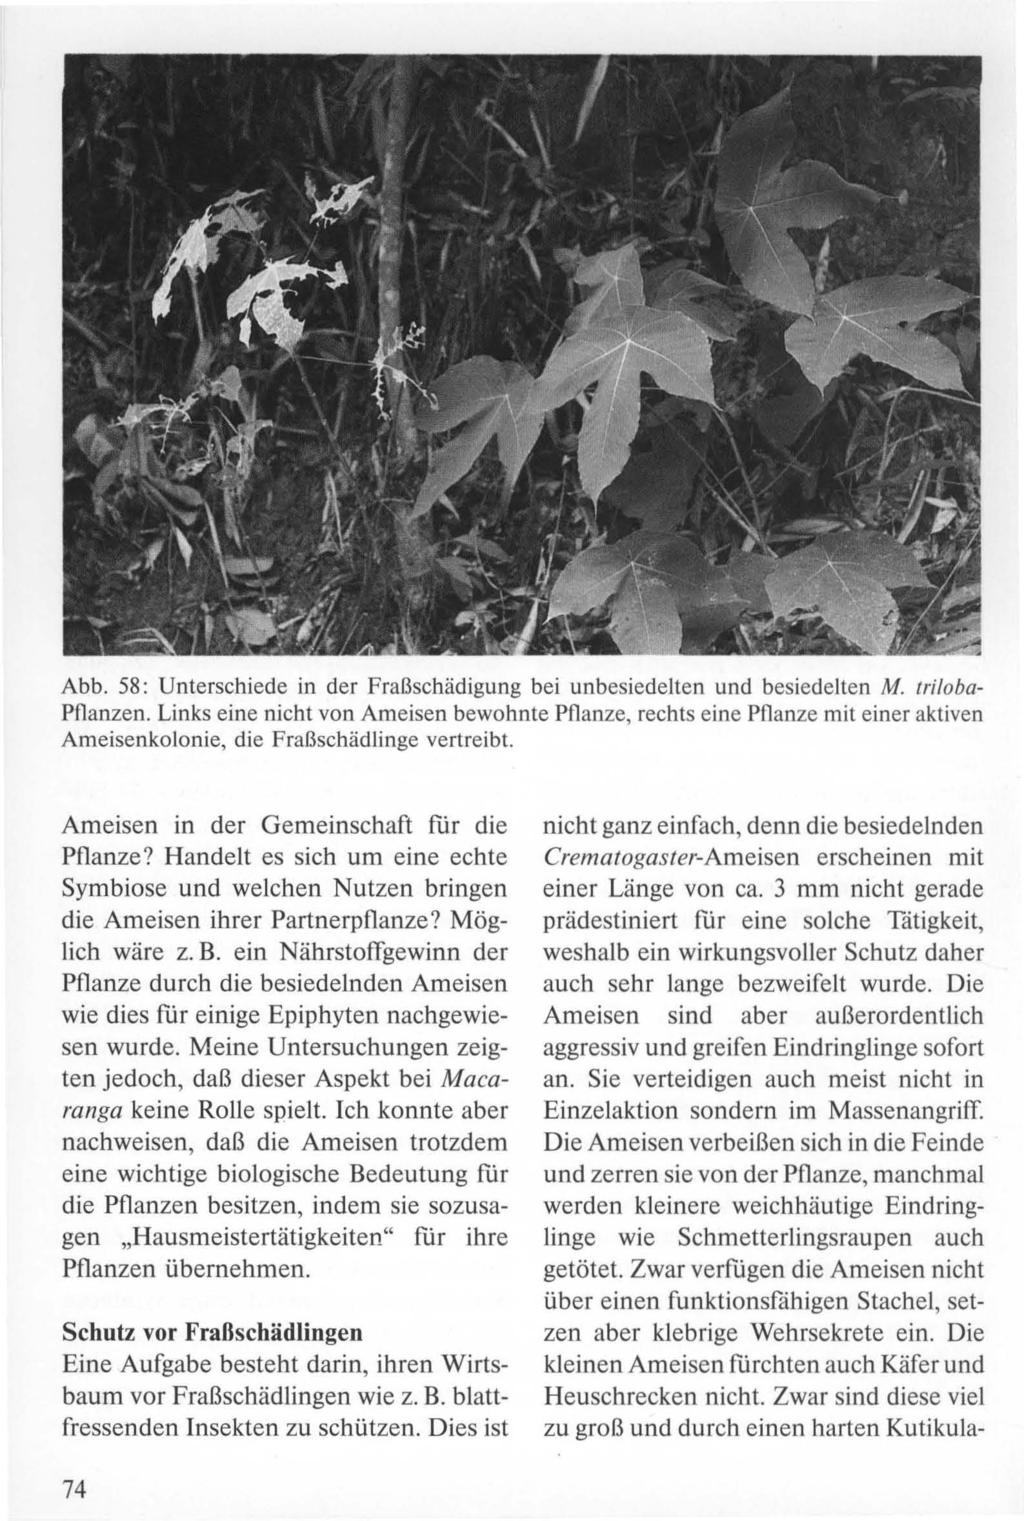 Abb. 58: Unterschiede in der Fraßschädigung bei unbesiedelten und besiedelten M. triloba Pflanzen.